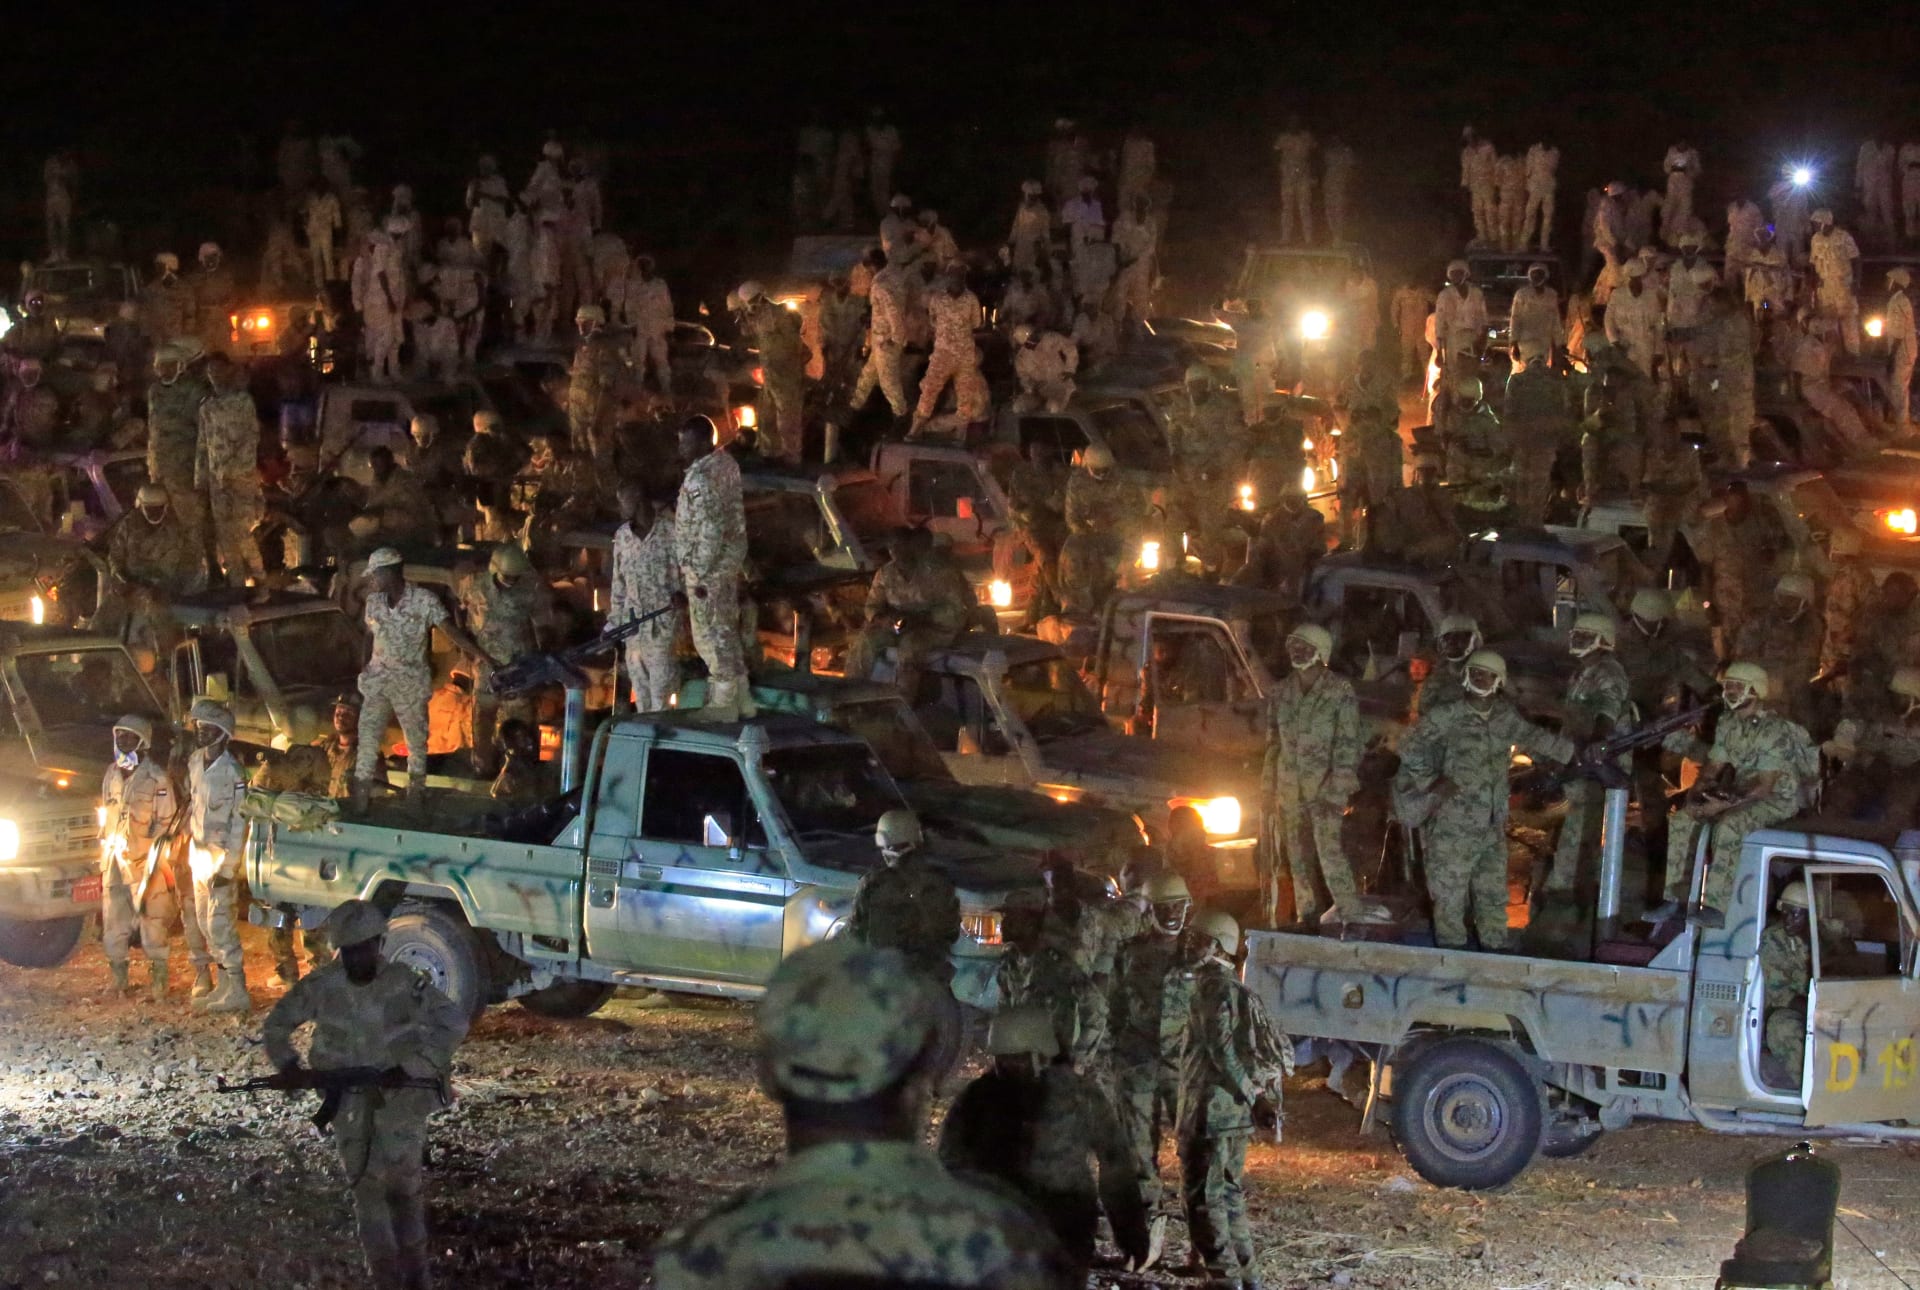 السودان: تعزيزات عسكرية إلى الشريط الحدودي لاستعادة "أراض مغتصبة" من إثيوبيا